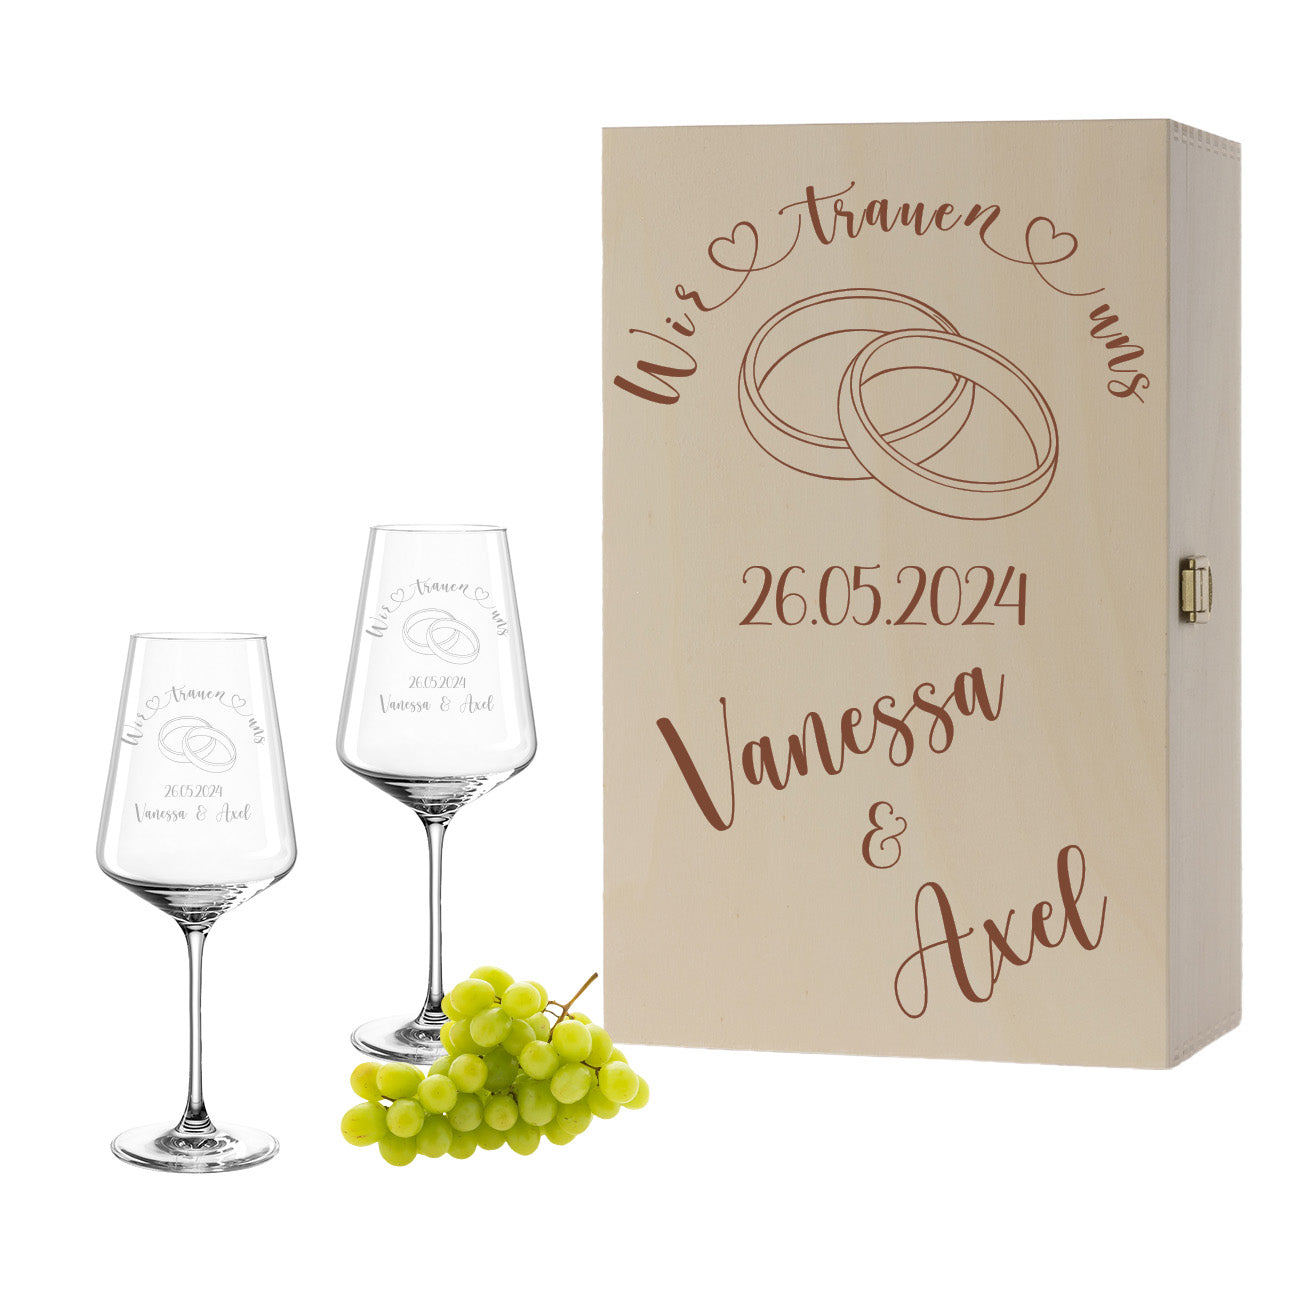 Weinglas mit Gravur Leonardo Puccini "WIR TRAUEN UNS" Motiv Ringe 2 Gläser und Holzbox groß mit Wunschname & Datum